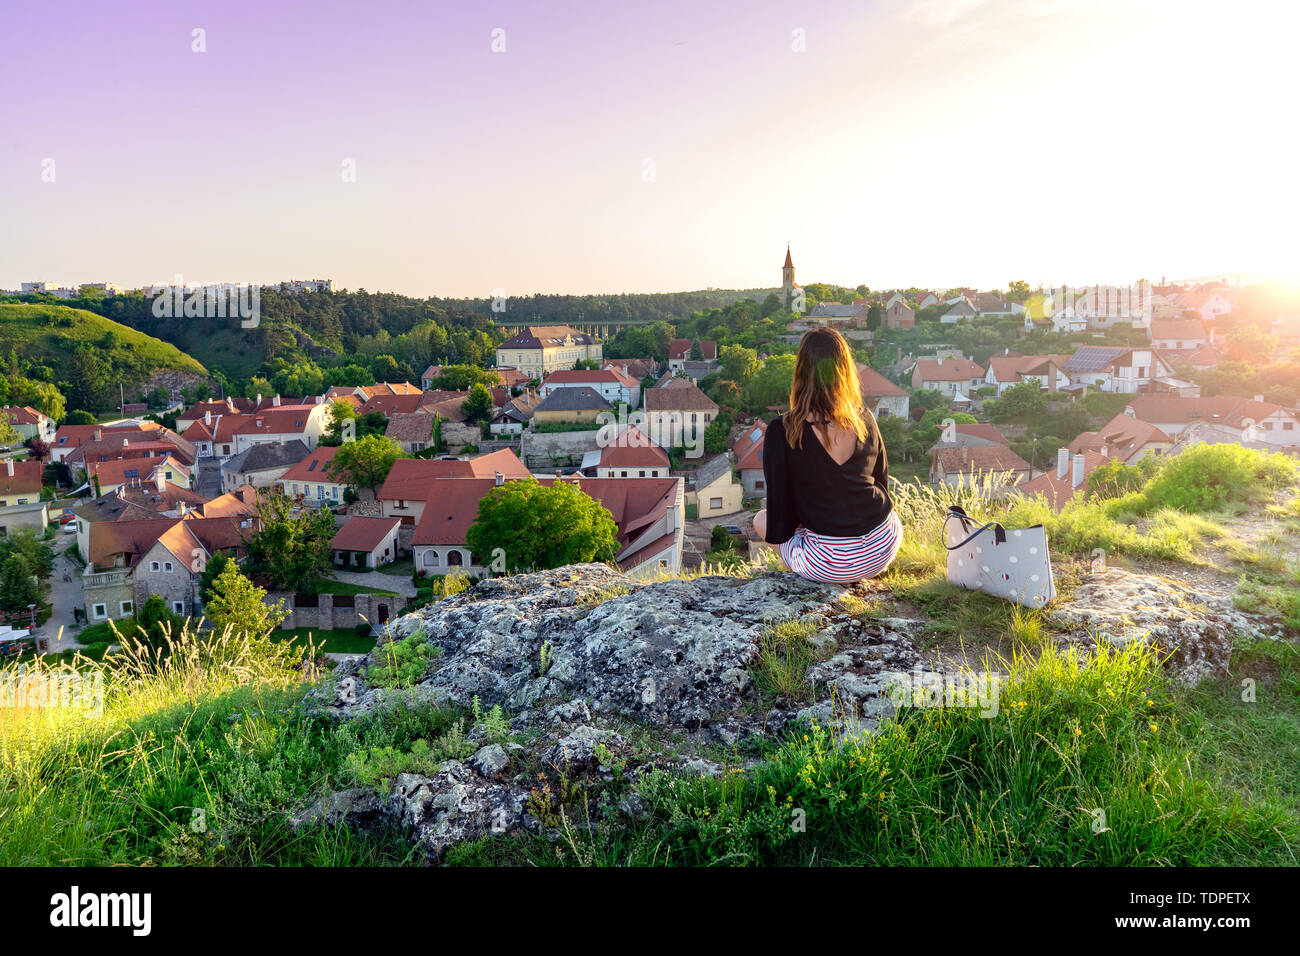 La colline verte jardin au milieu de la vieille ville de Veszprem, Hongrie avec une femme assise sur la falaise en profitant de la vue Banque D'Images